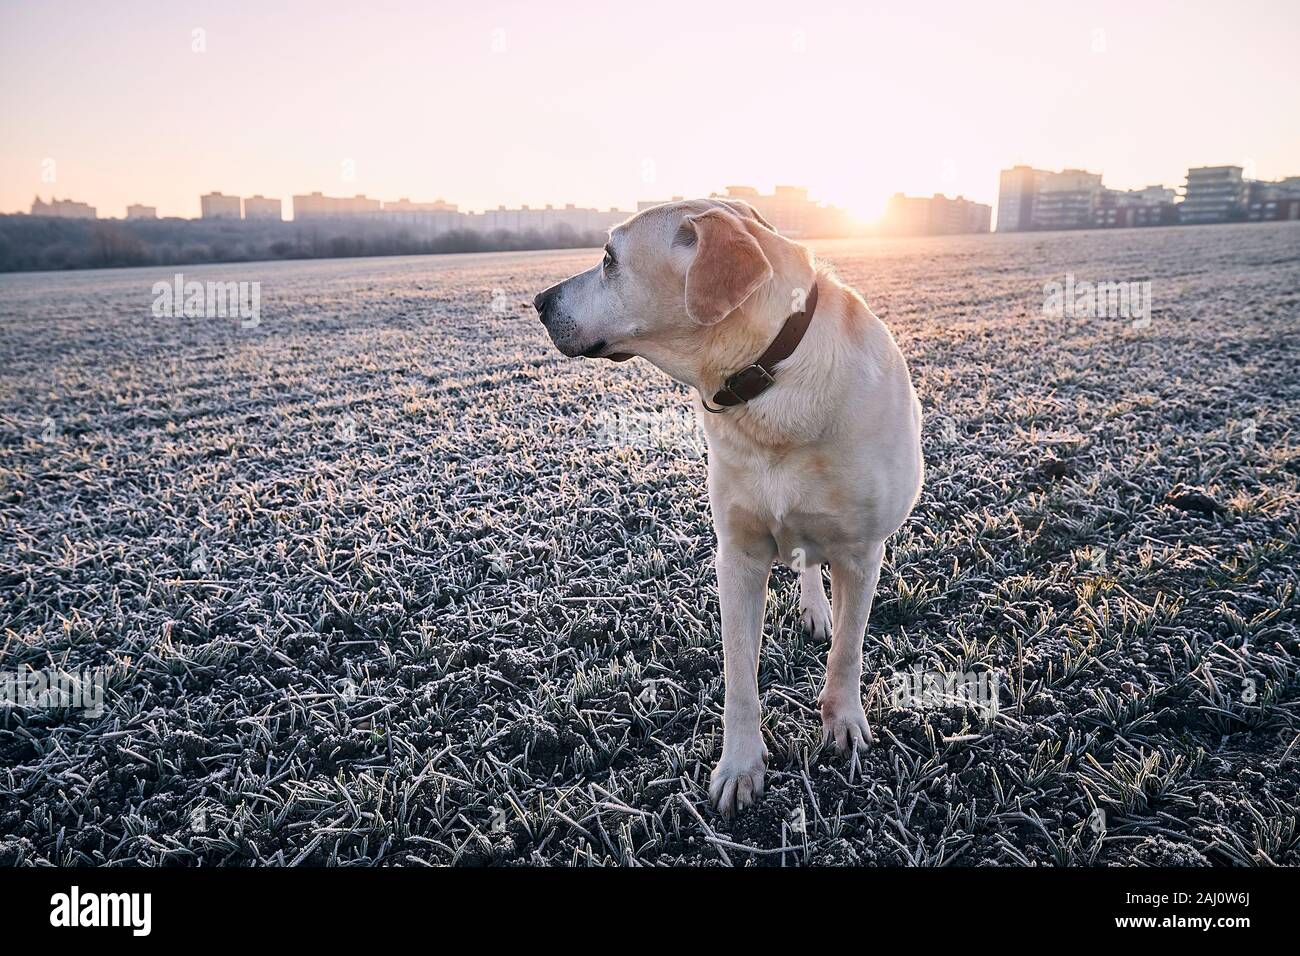 Promenade de chiens sur terrain au cours de frosty matin. Labrador retriever contre cityscape au lever du soleil. Prague, République Tchèque Banque D'Images